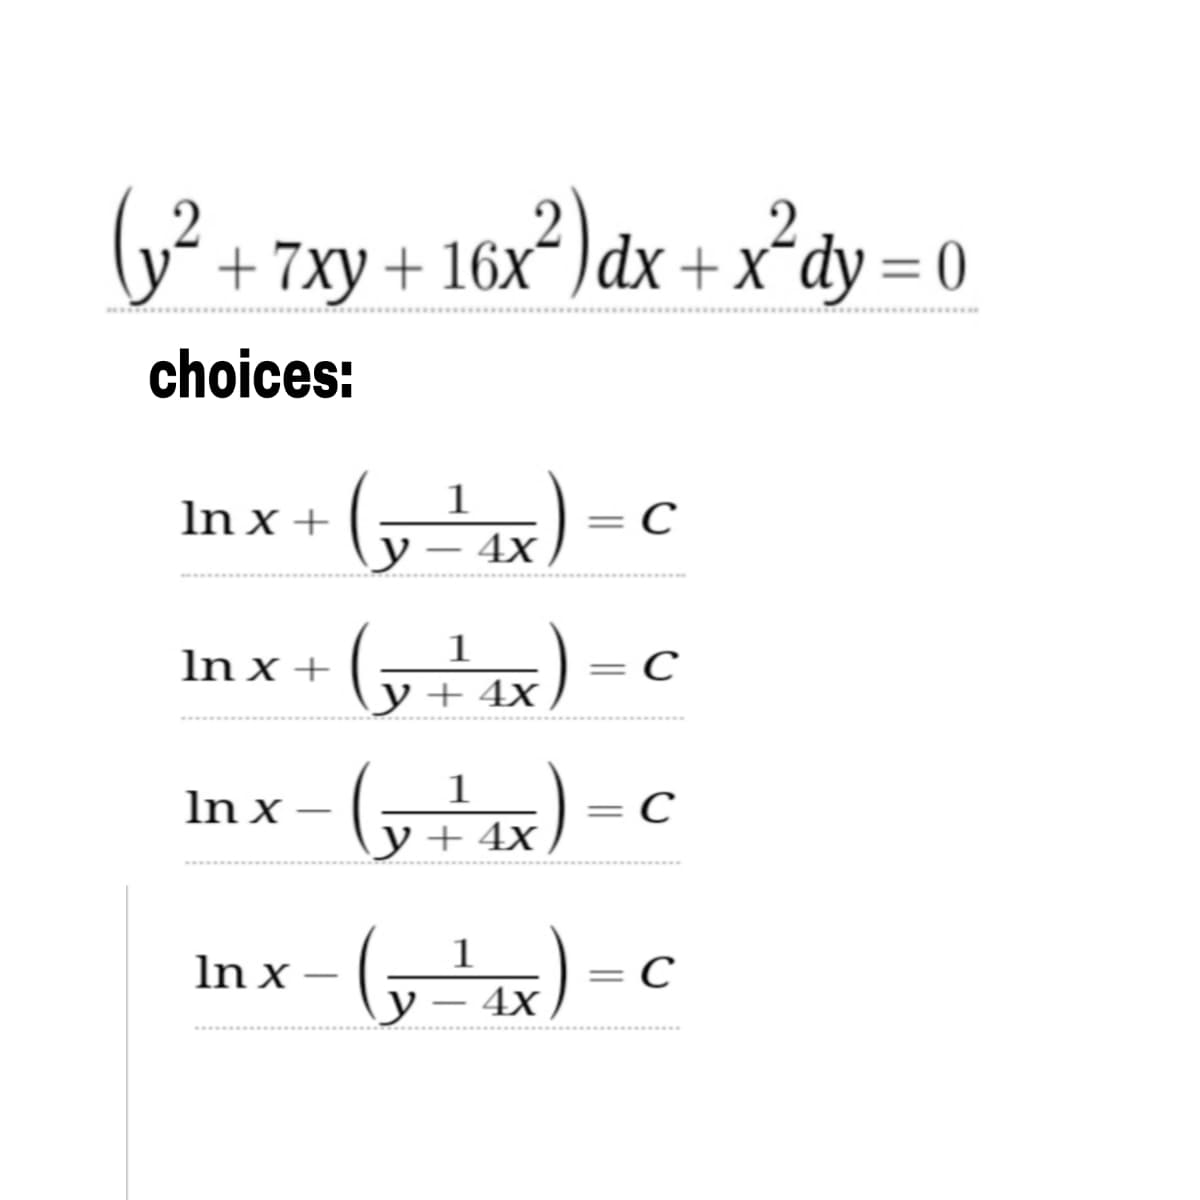 (y² + 7xy + 16x²) dx + x²dy =(
choices:
In x +
1
(y=²4x)
= = C
1
In x +
с
x+²4x)
y + 4x
In x
1
y + 4x
4X)
C
1
In x
(y-²4x) -
с